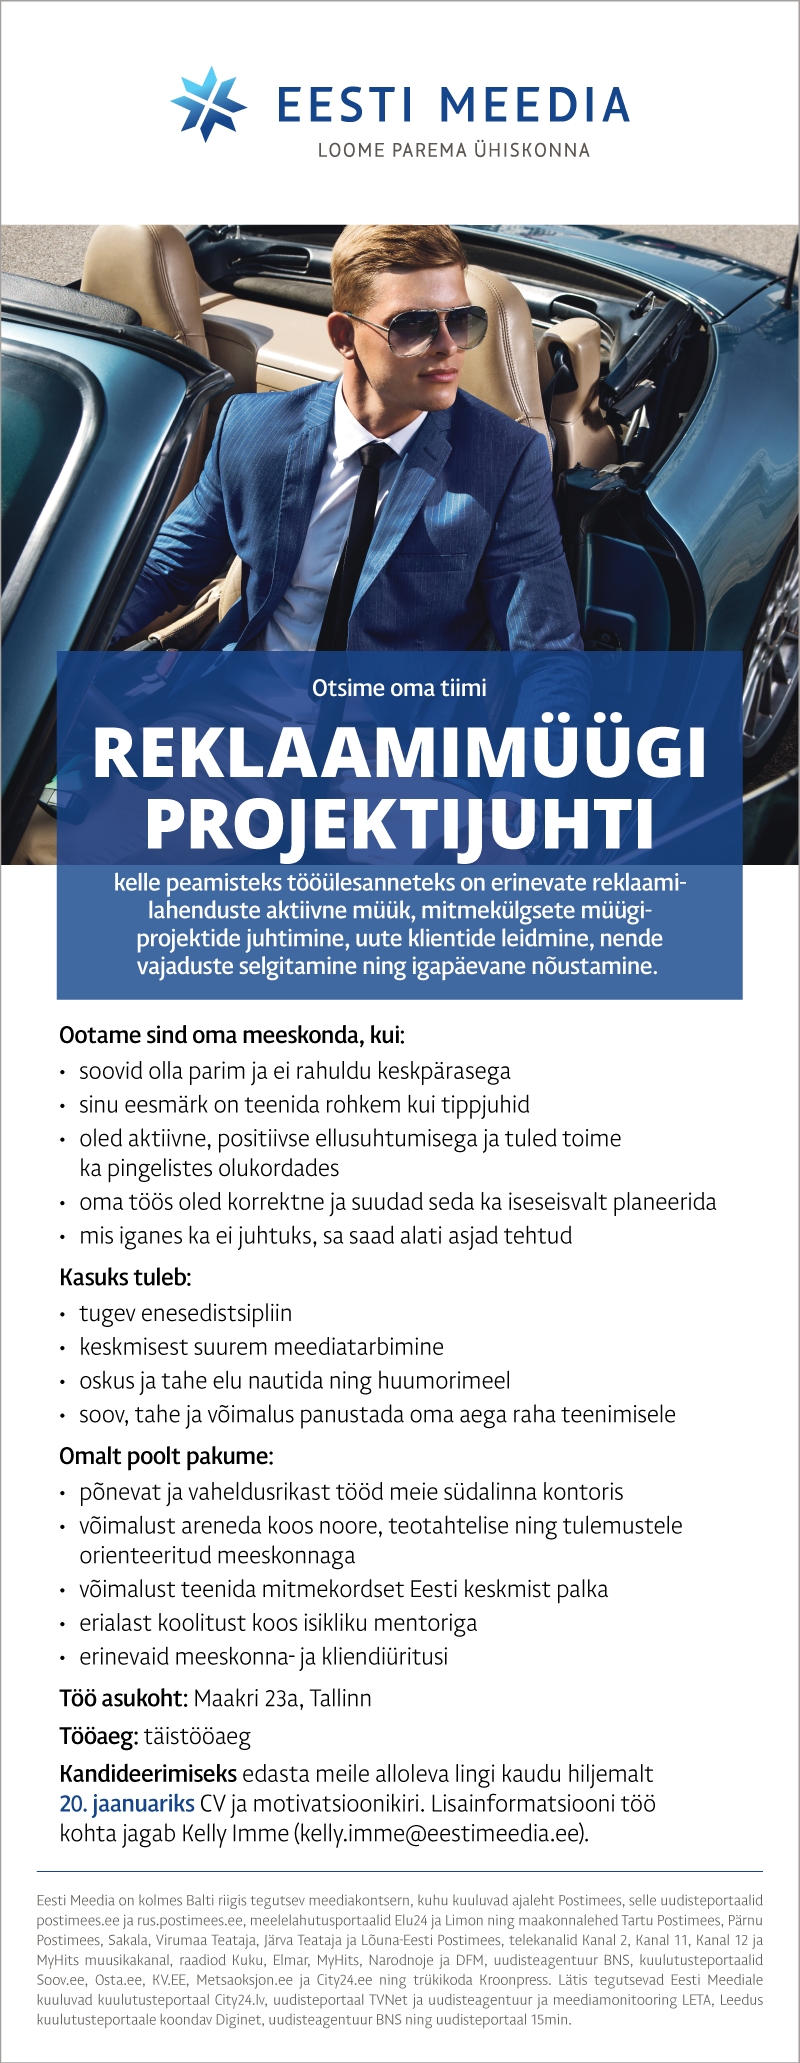 Eesti Meedia Reklaamimüügi projektijuht